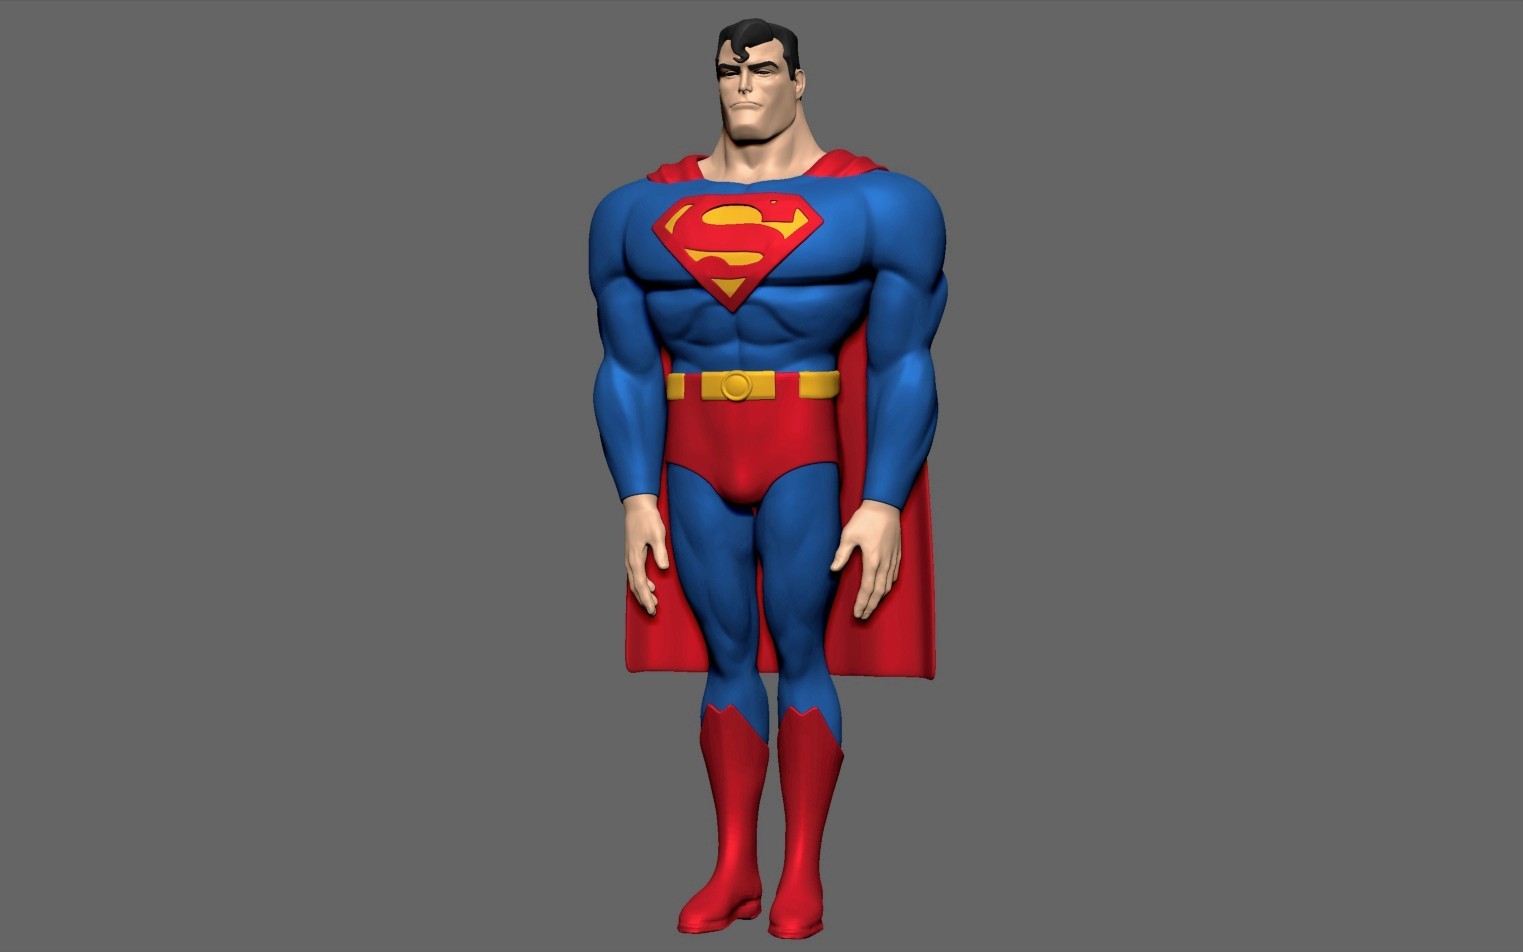 Joseph Bradascio - Superman the animated series model